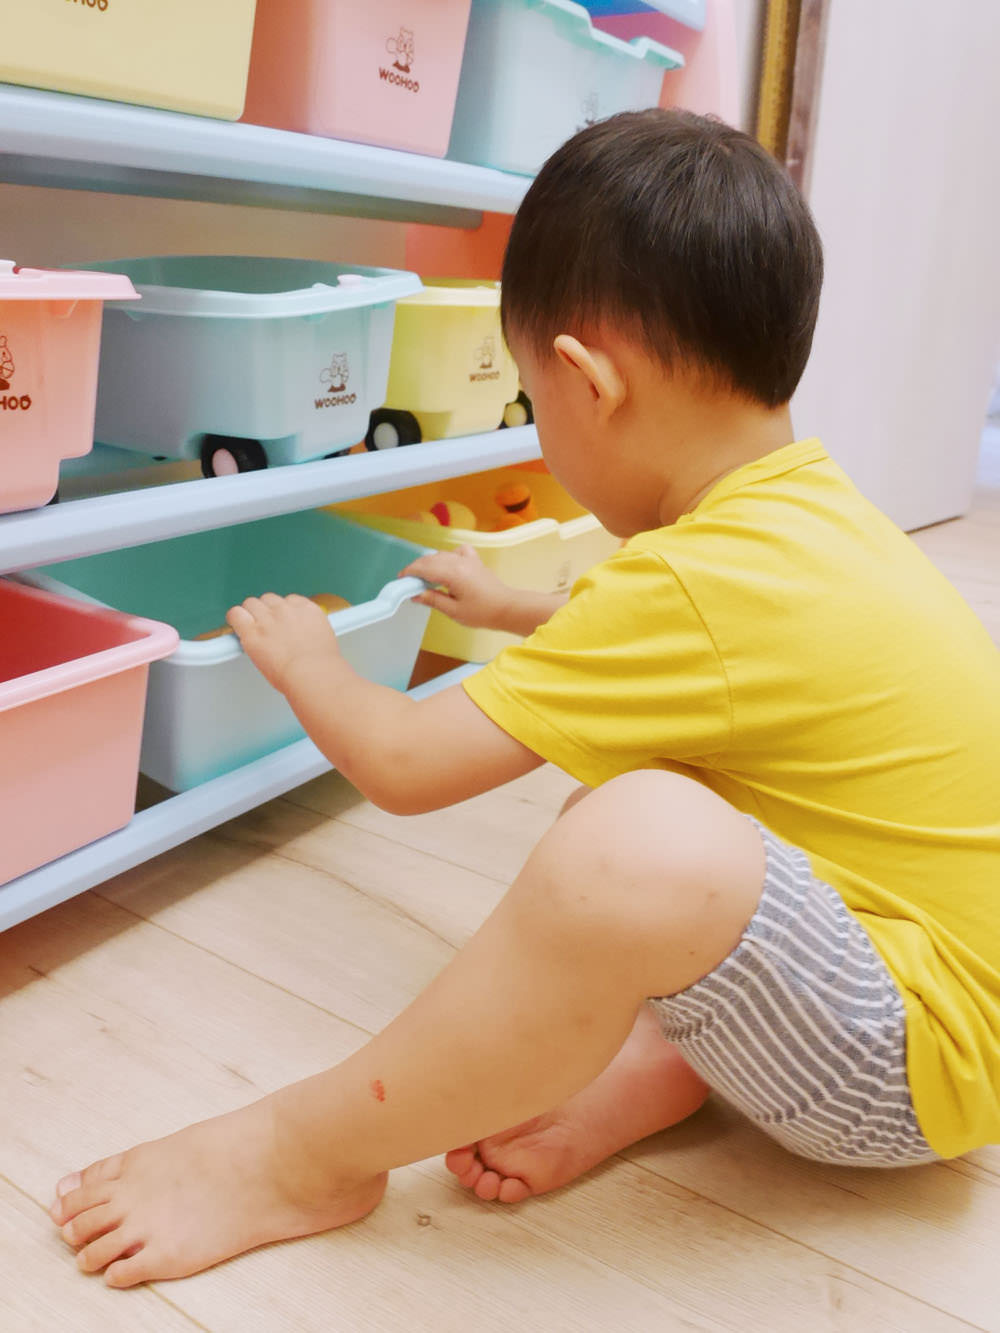 [啾團] 發揮小腦袋的無限想像力,安全的玩,快樂的收WOOHOO Block Junior 軟積木+WOOHOO兒童玩具收納櫃